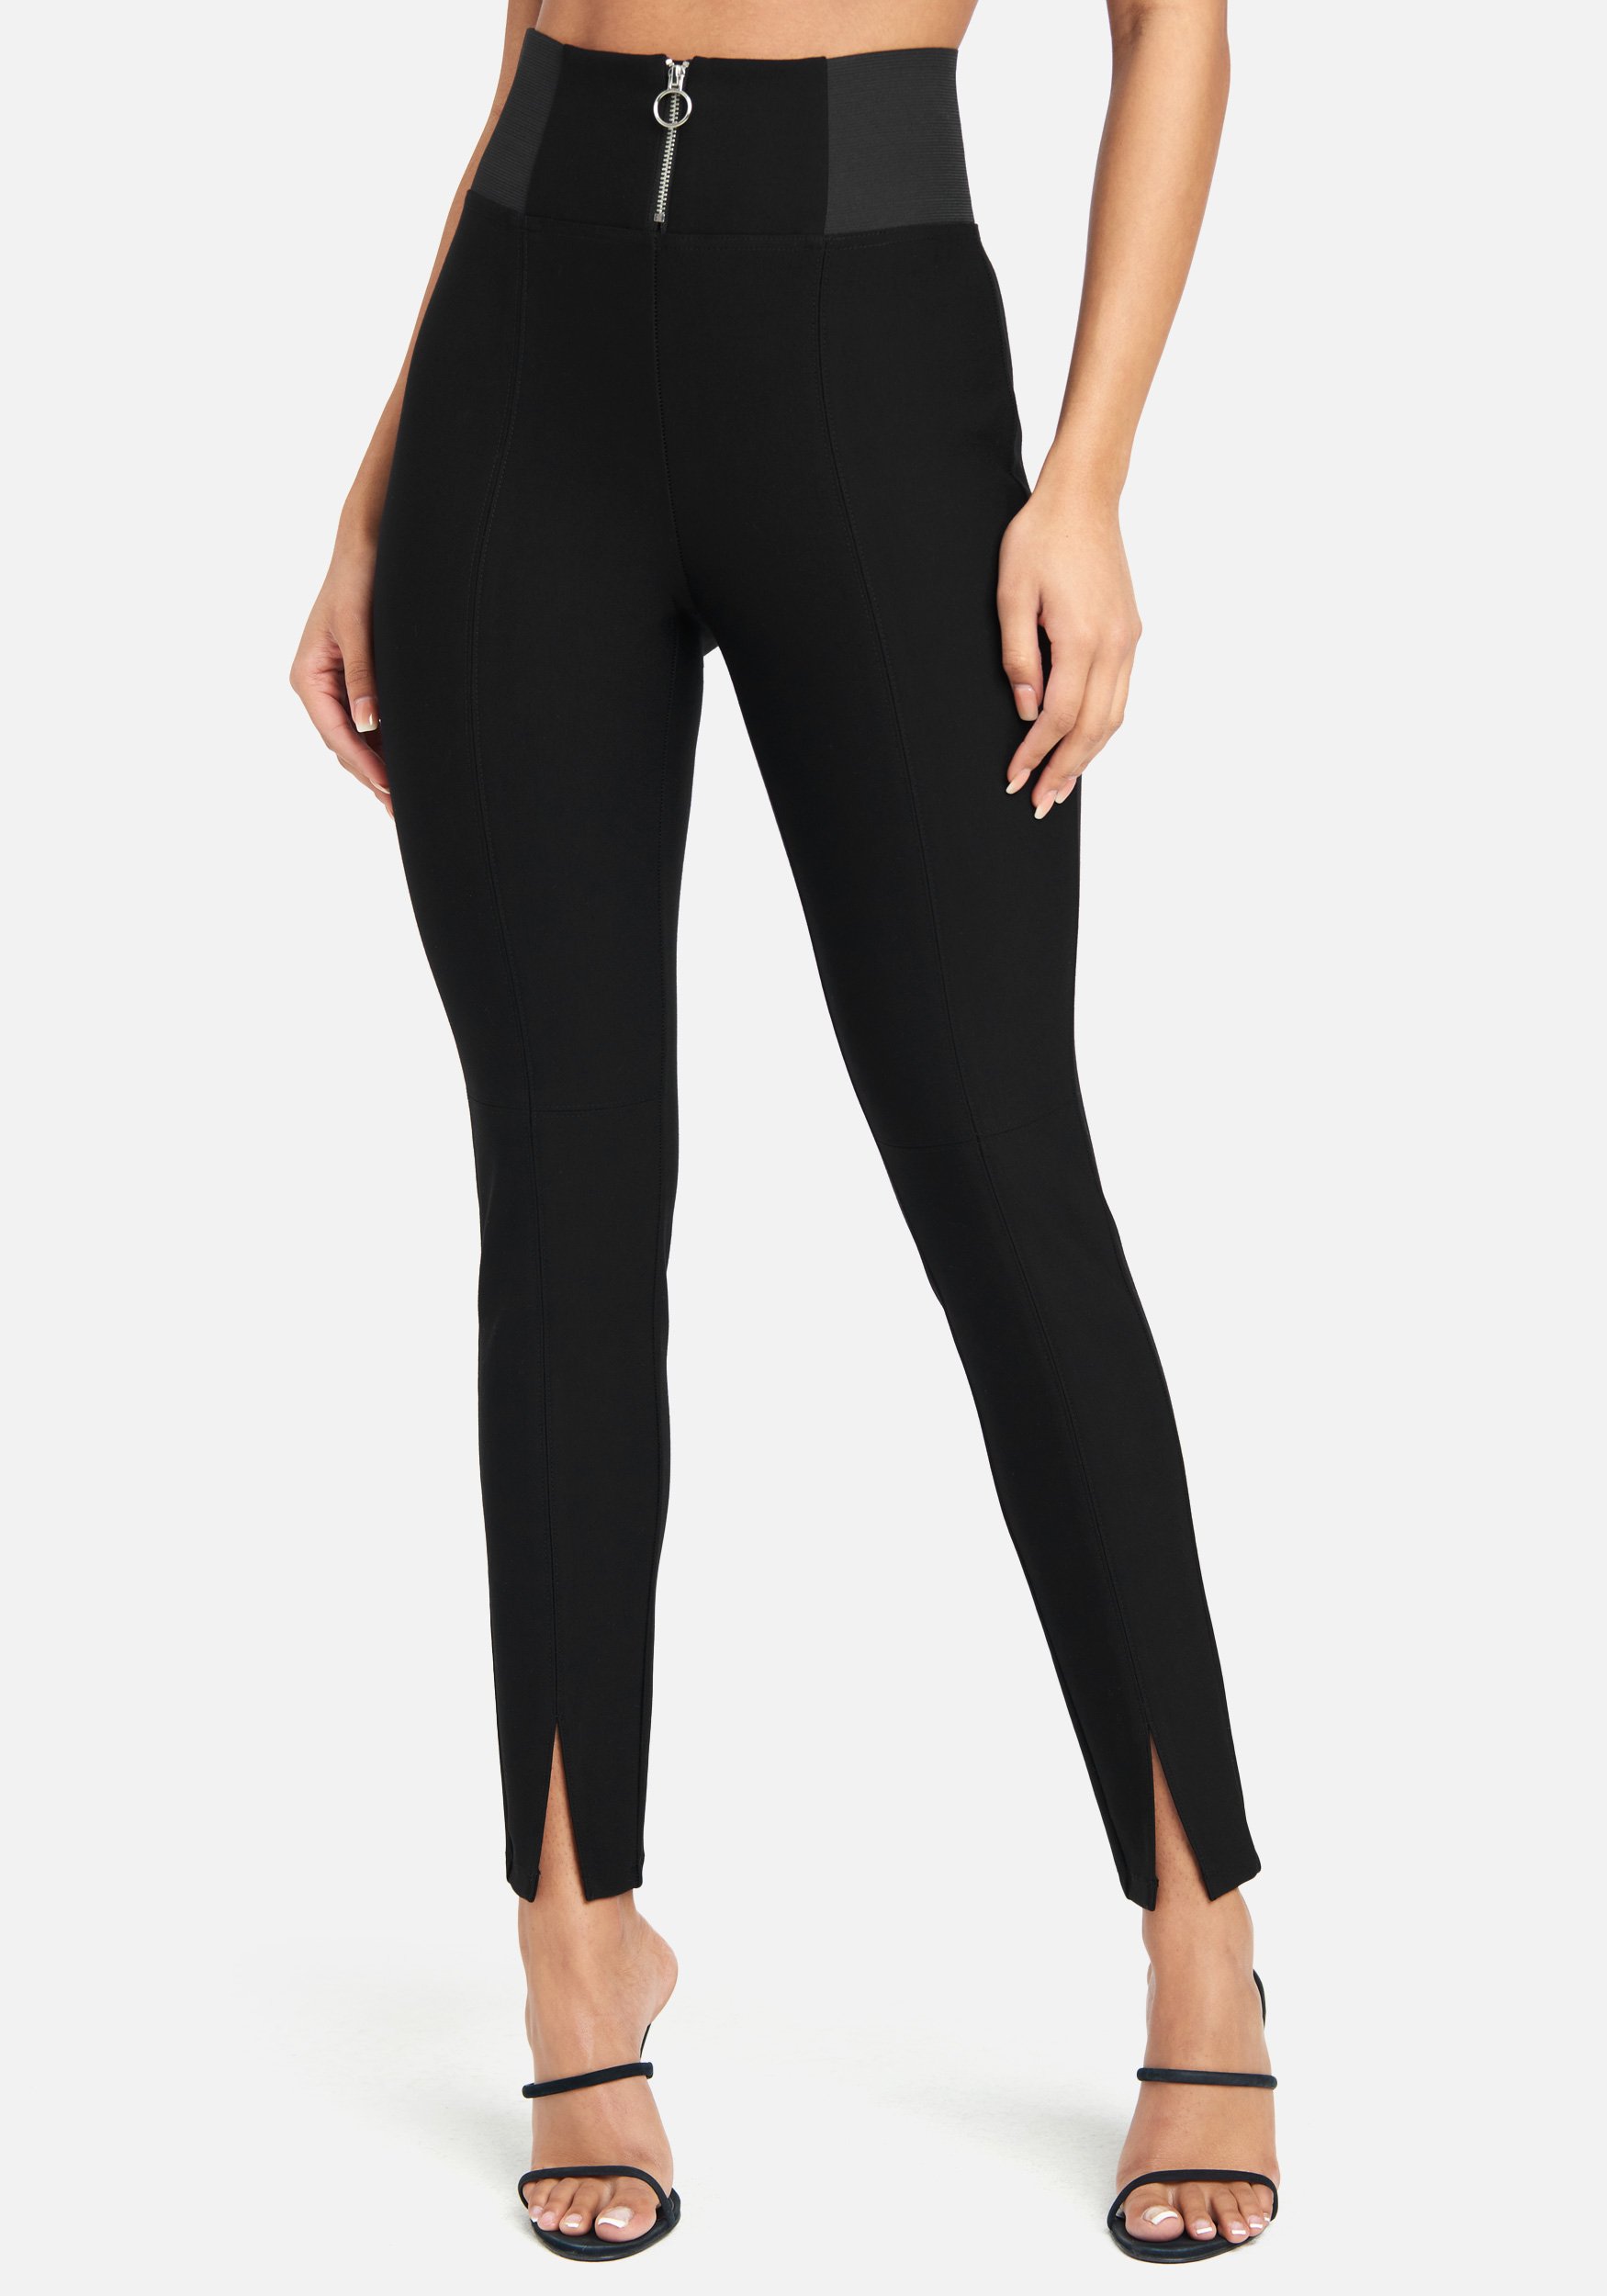 Bebe Women's Elastic High Waist Slit Front Legging, Size Medium in Black Spandex/Nylon